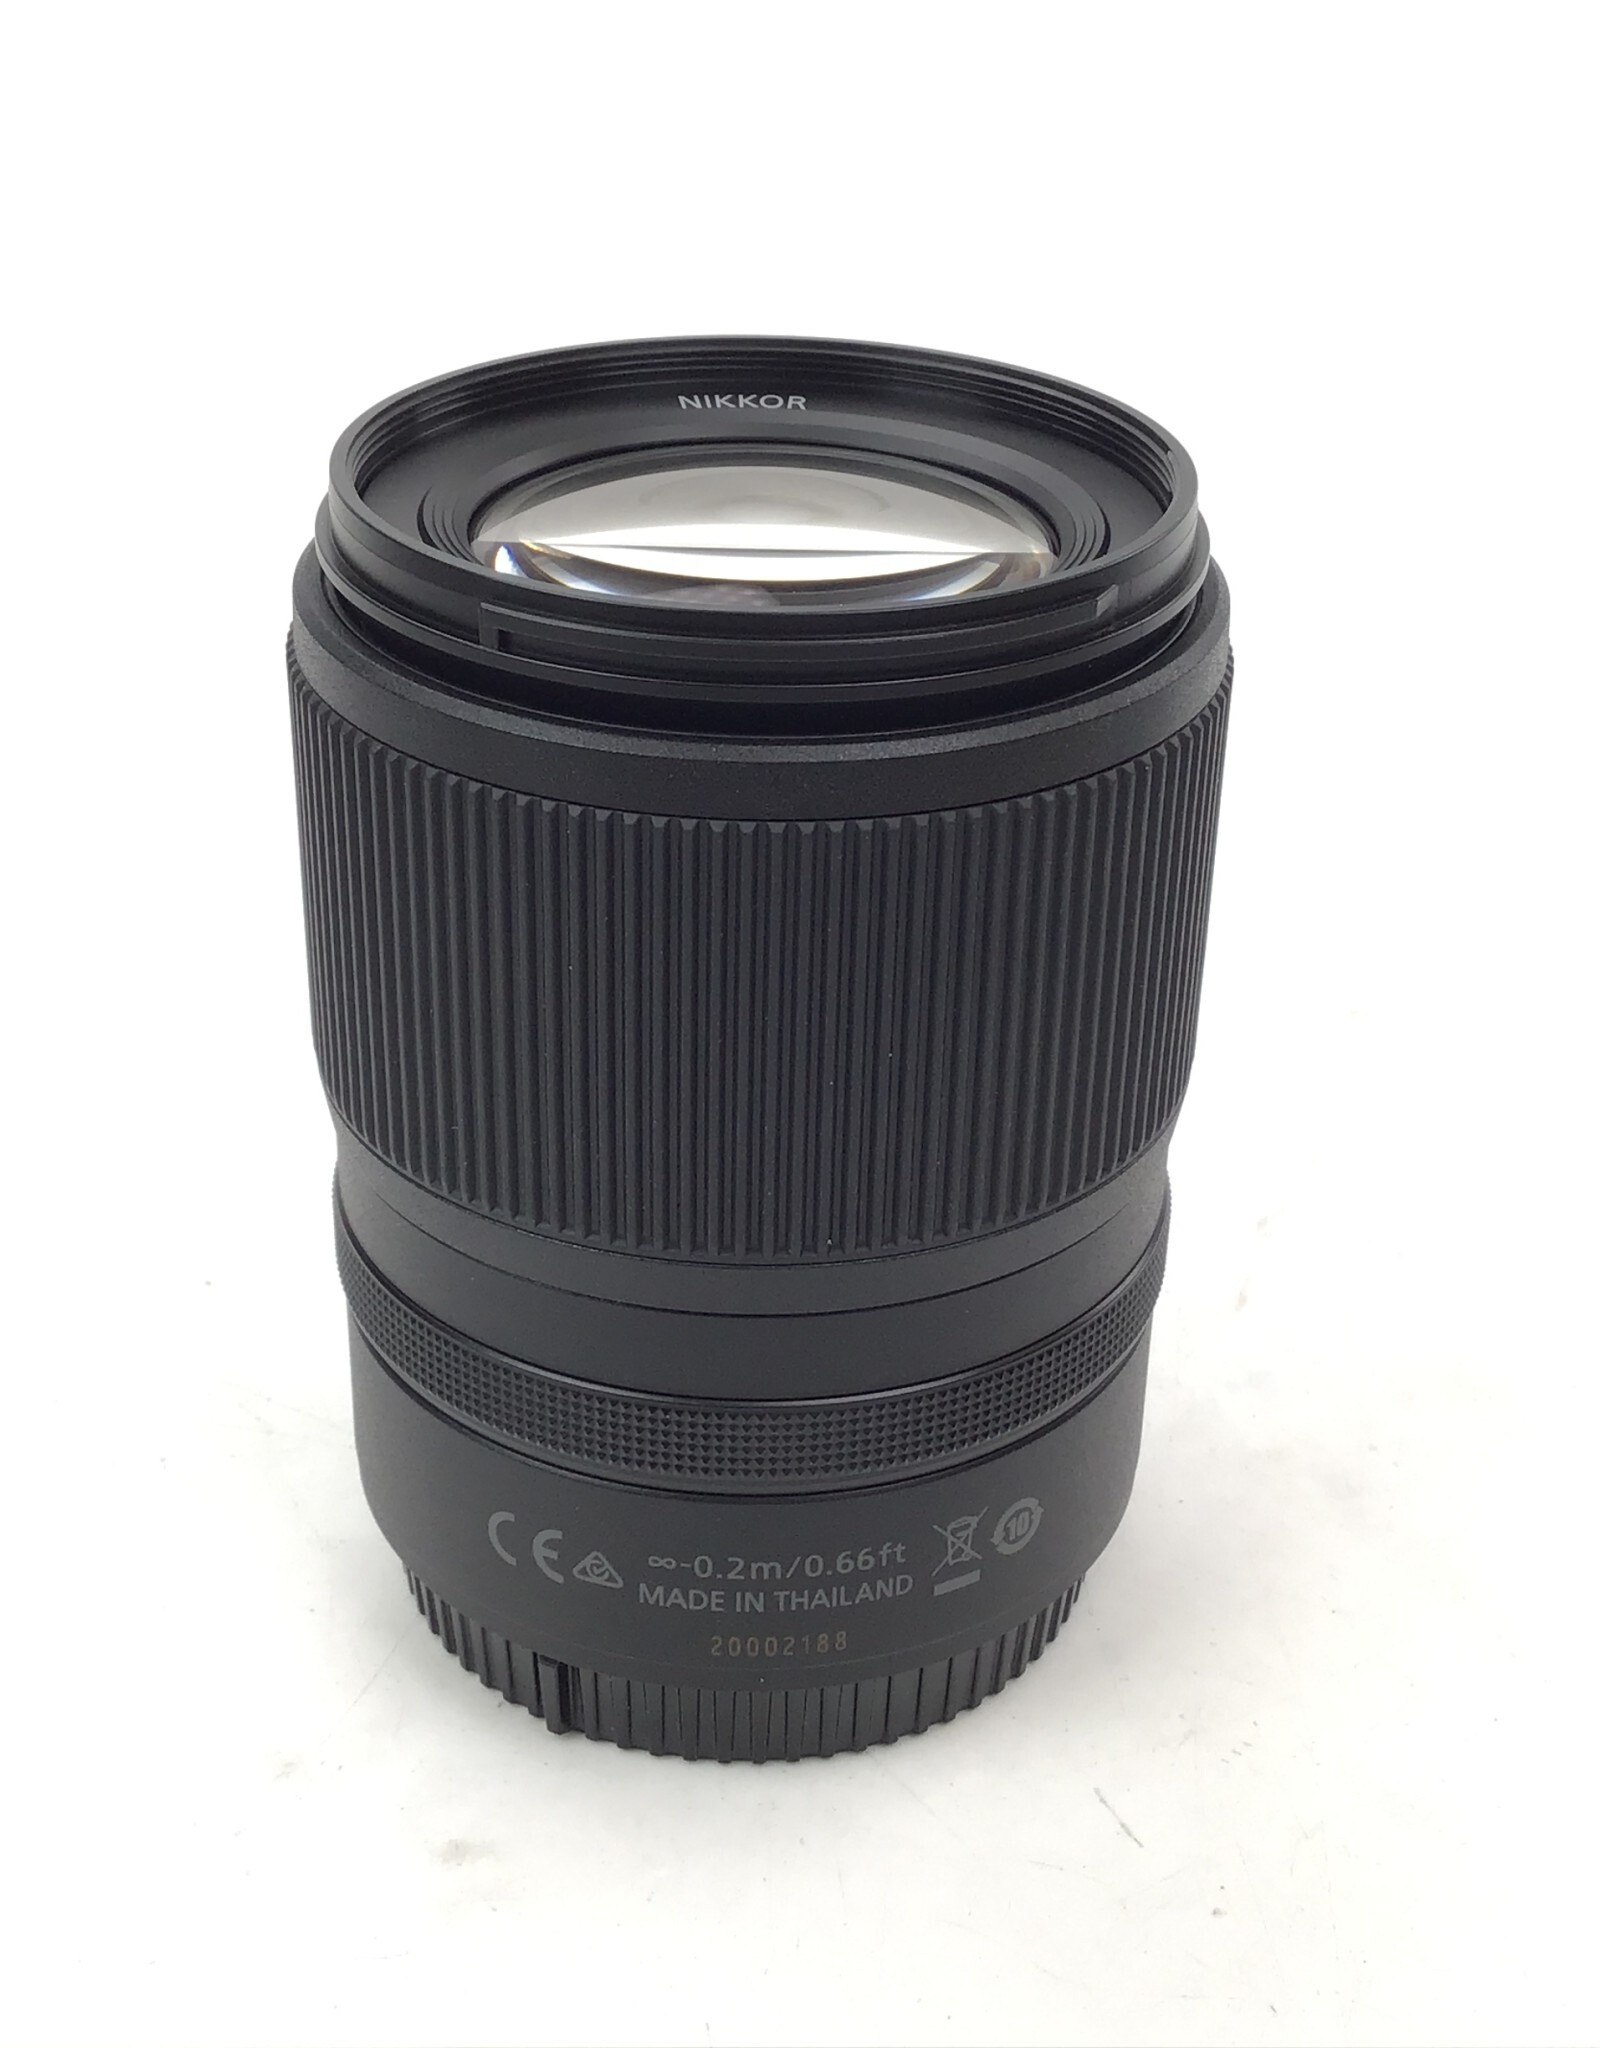 NIKON Nikon Nikkor Z DX 18-140mm f3.5-6.3 VR Lens In Box Used EX